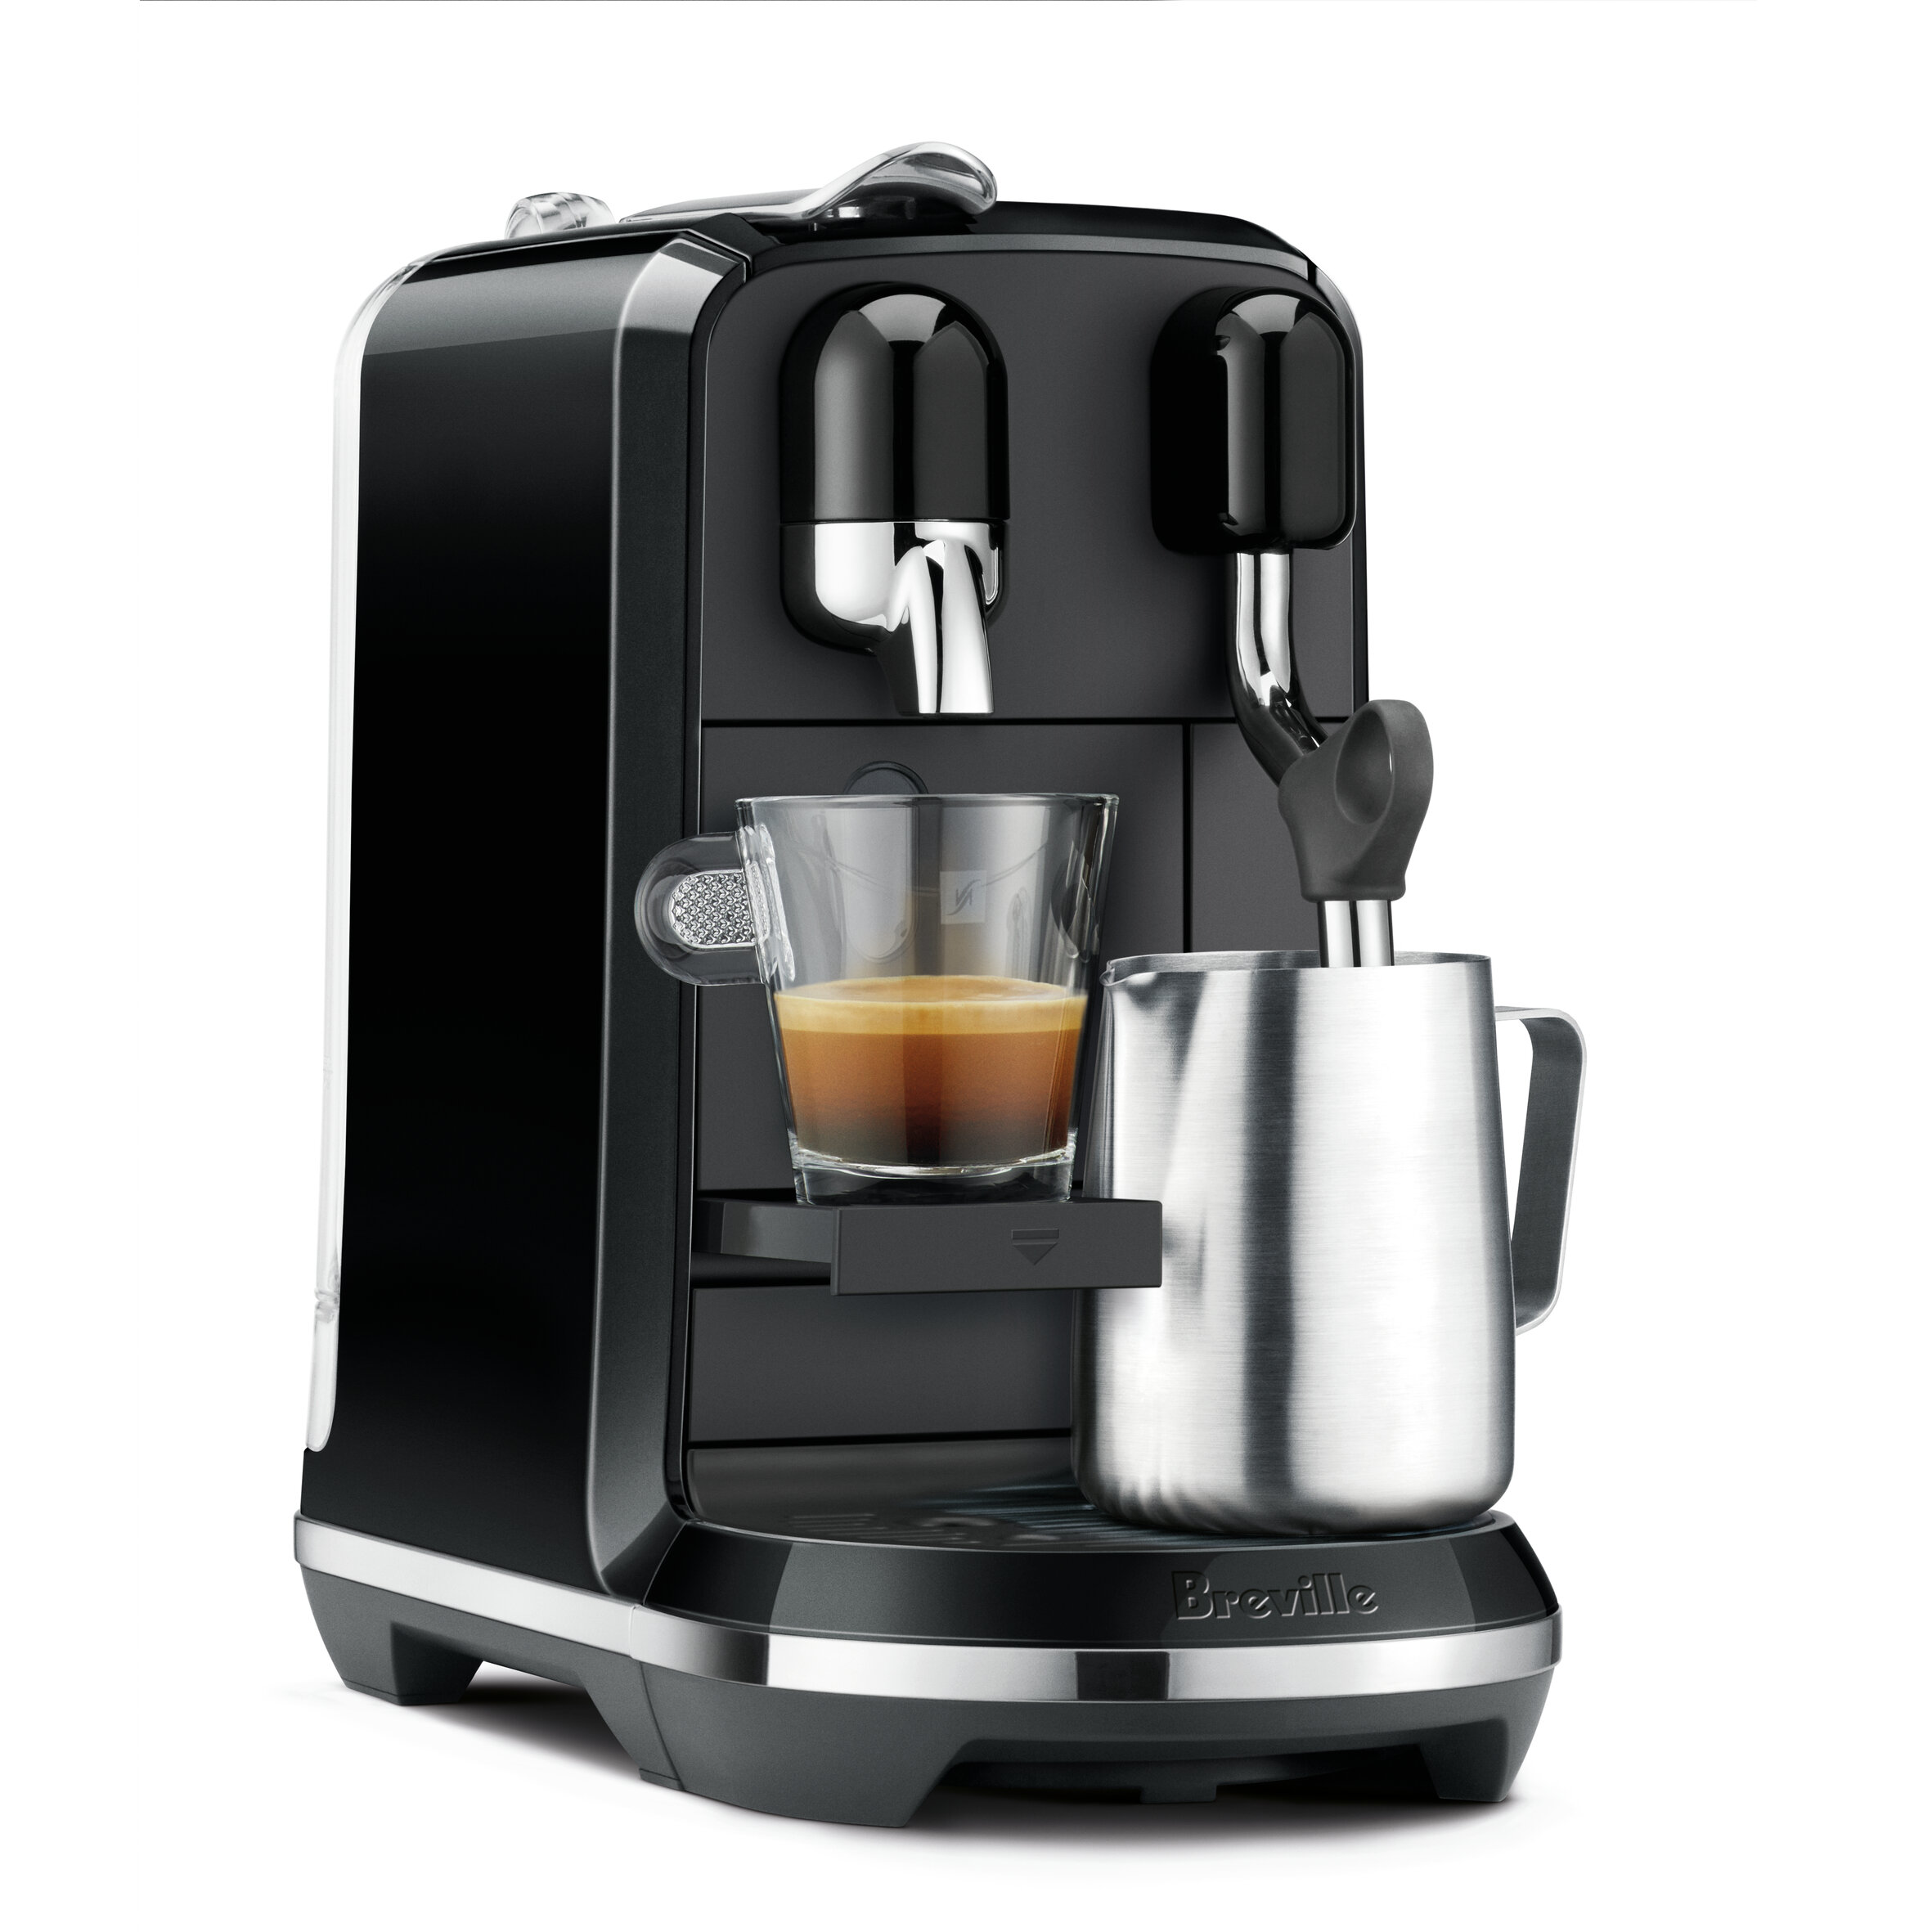 Nespresso Breville Automatic Coffee & Espresso Maker & Reviews